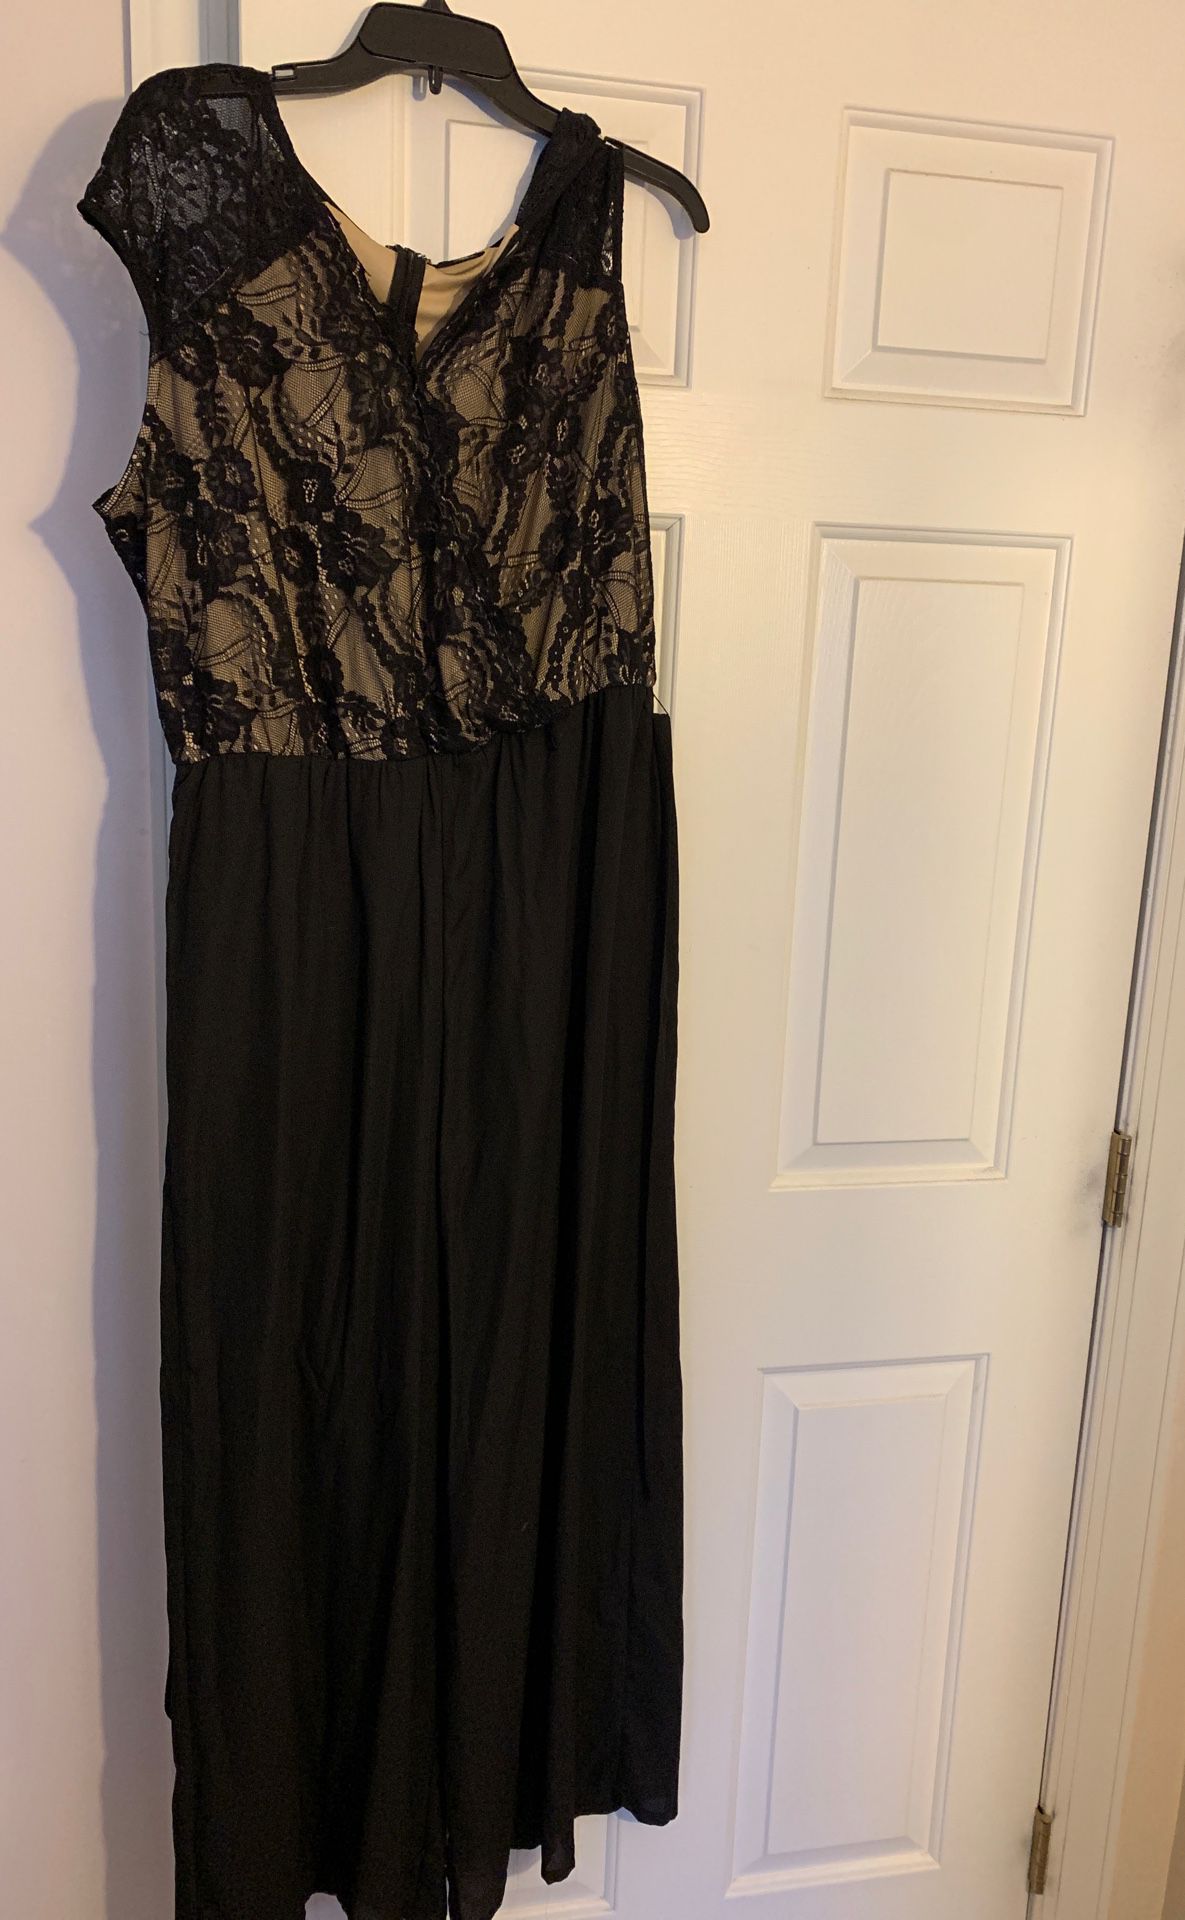 XL gold/black jumper dress